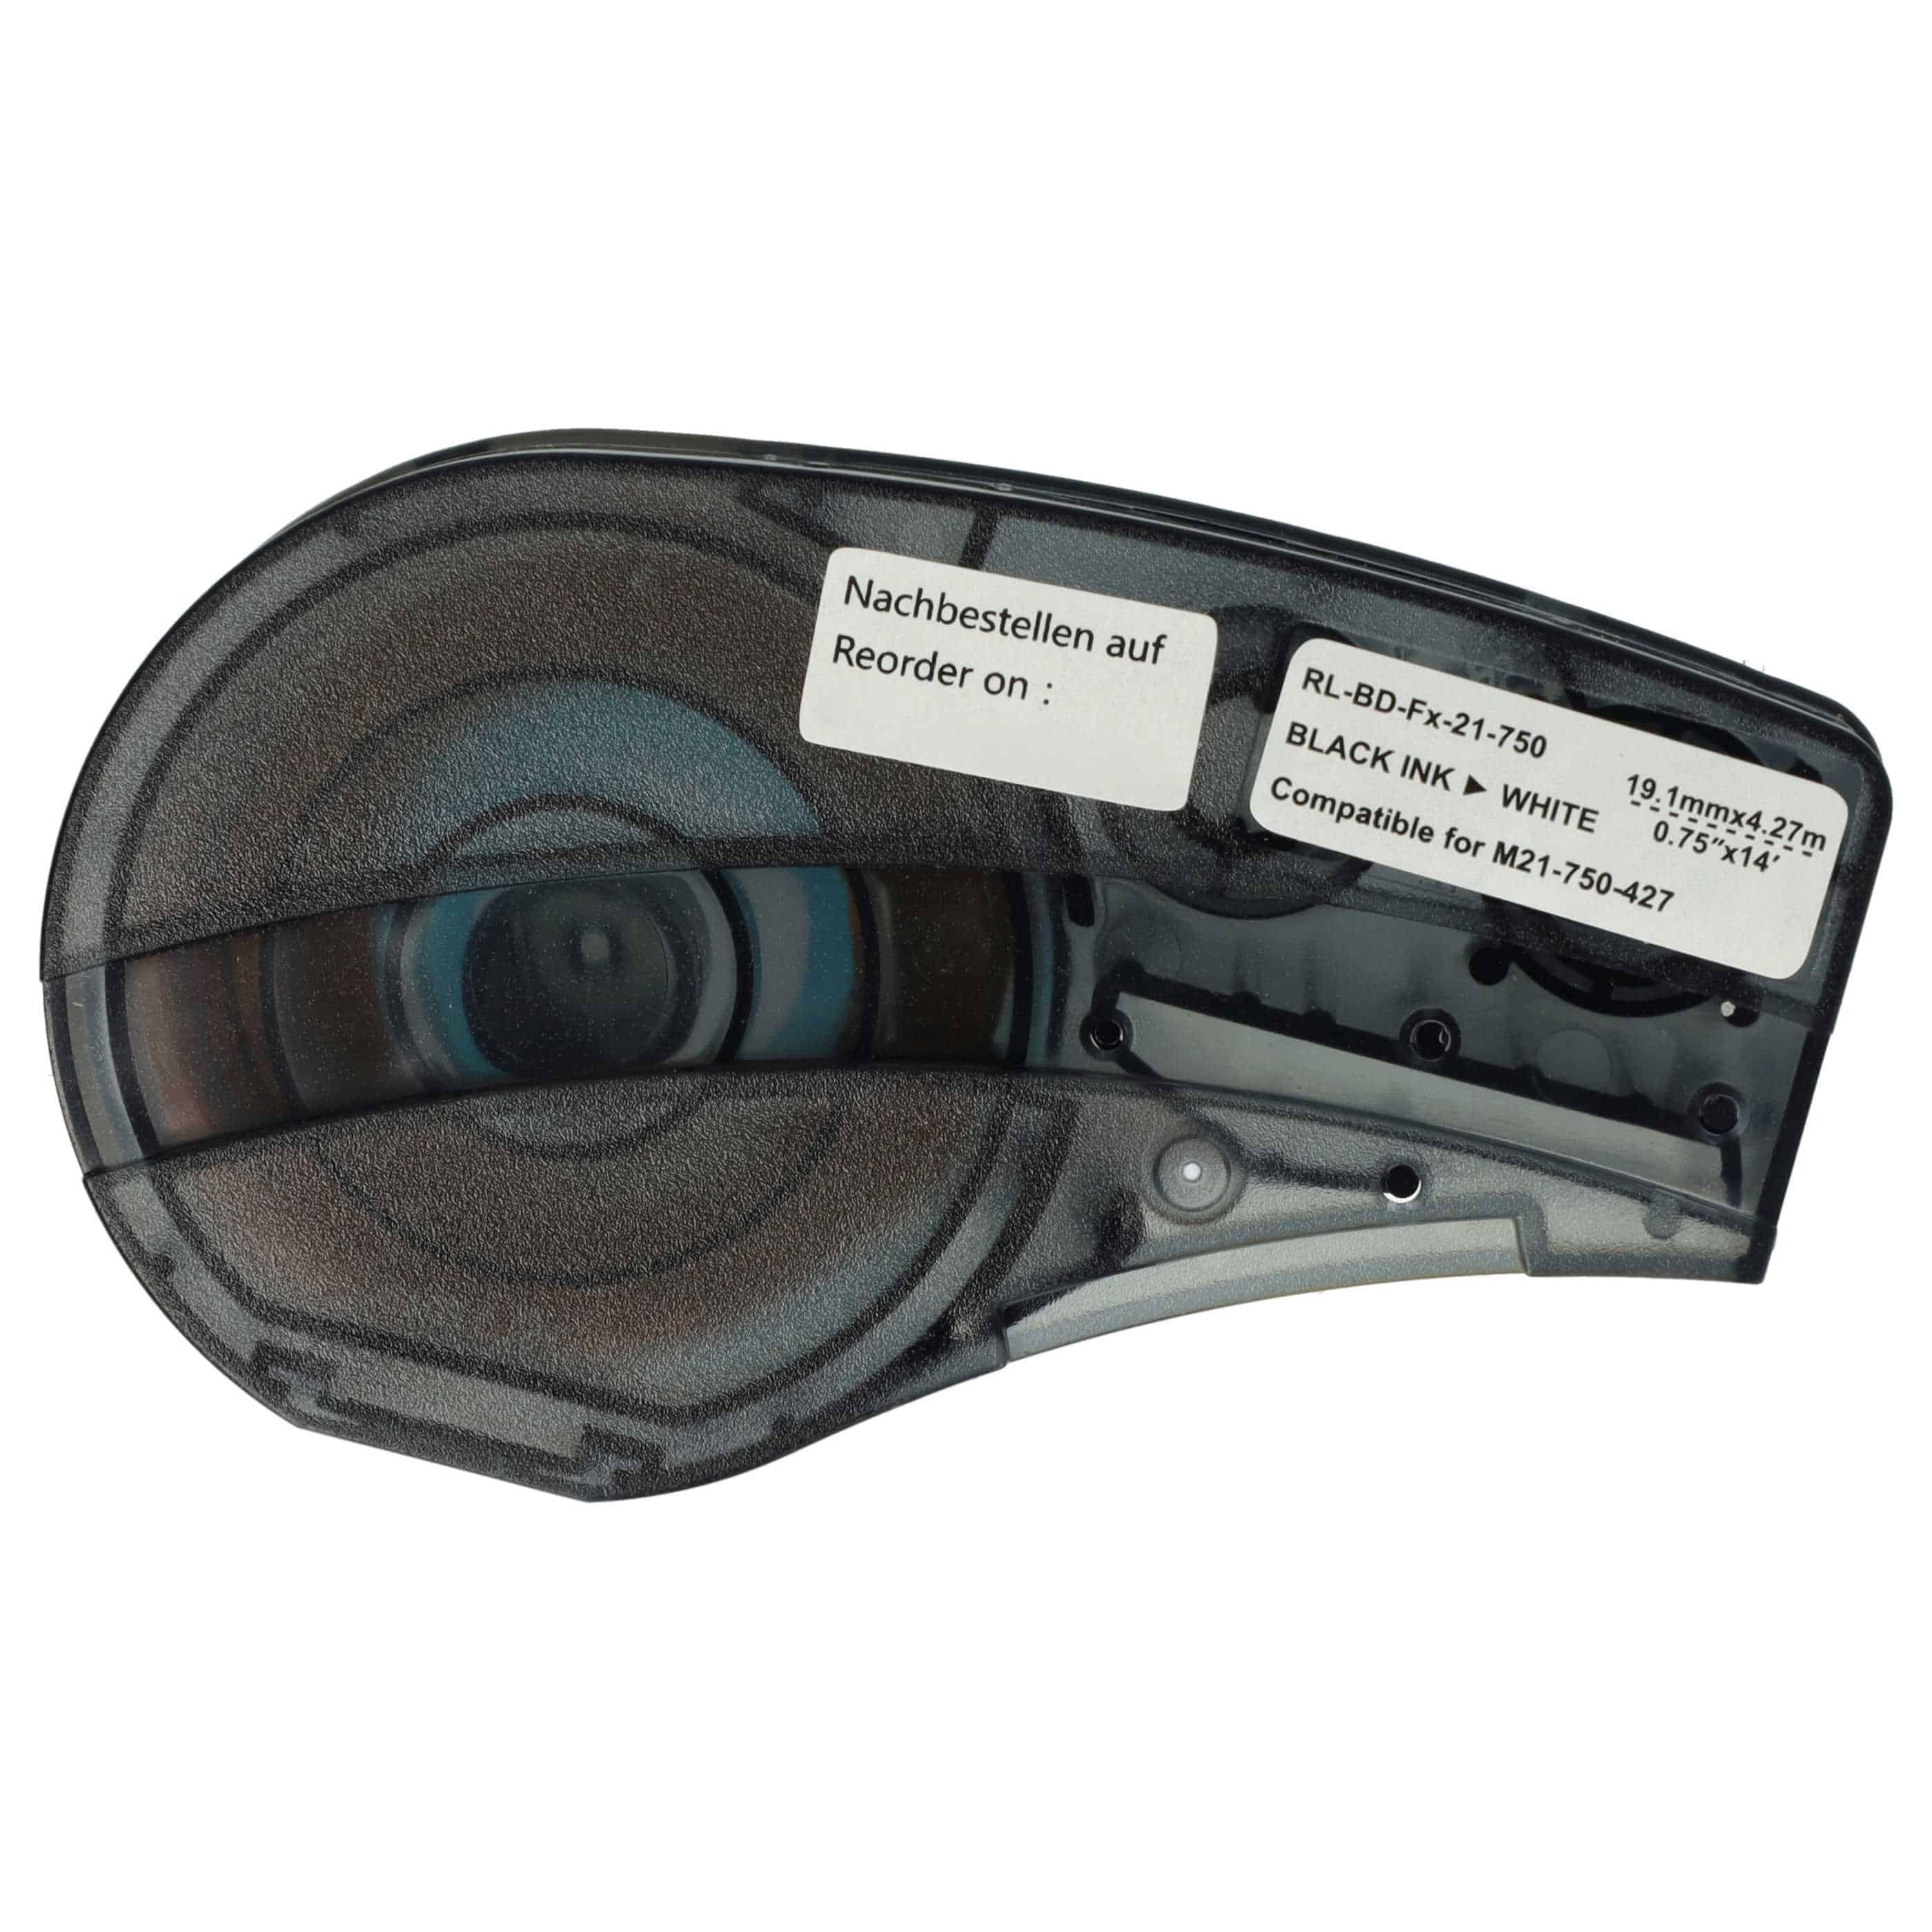 Cassette à ruban remplace Brady M21-750-427 - 19,05mm lettrage Noir ruban Blanc, vinyle